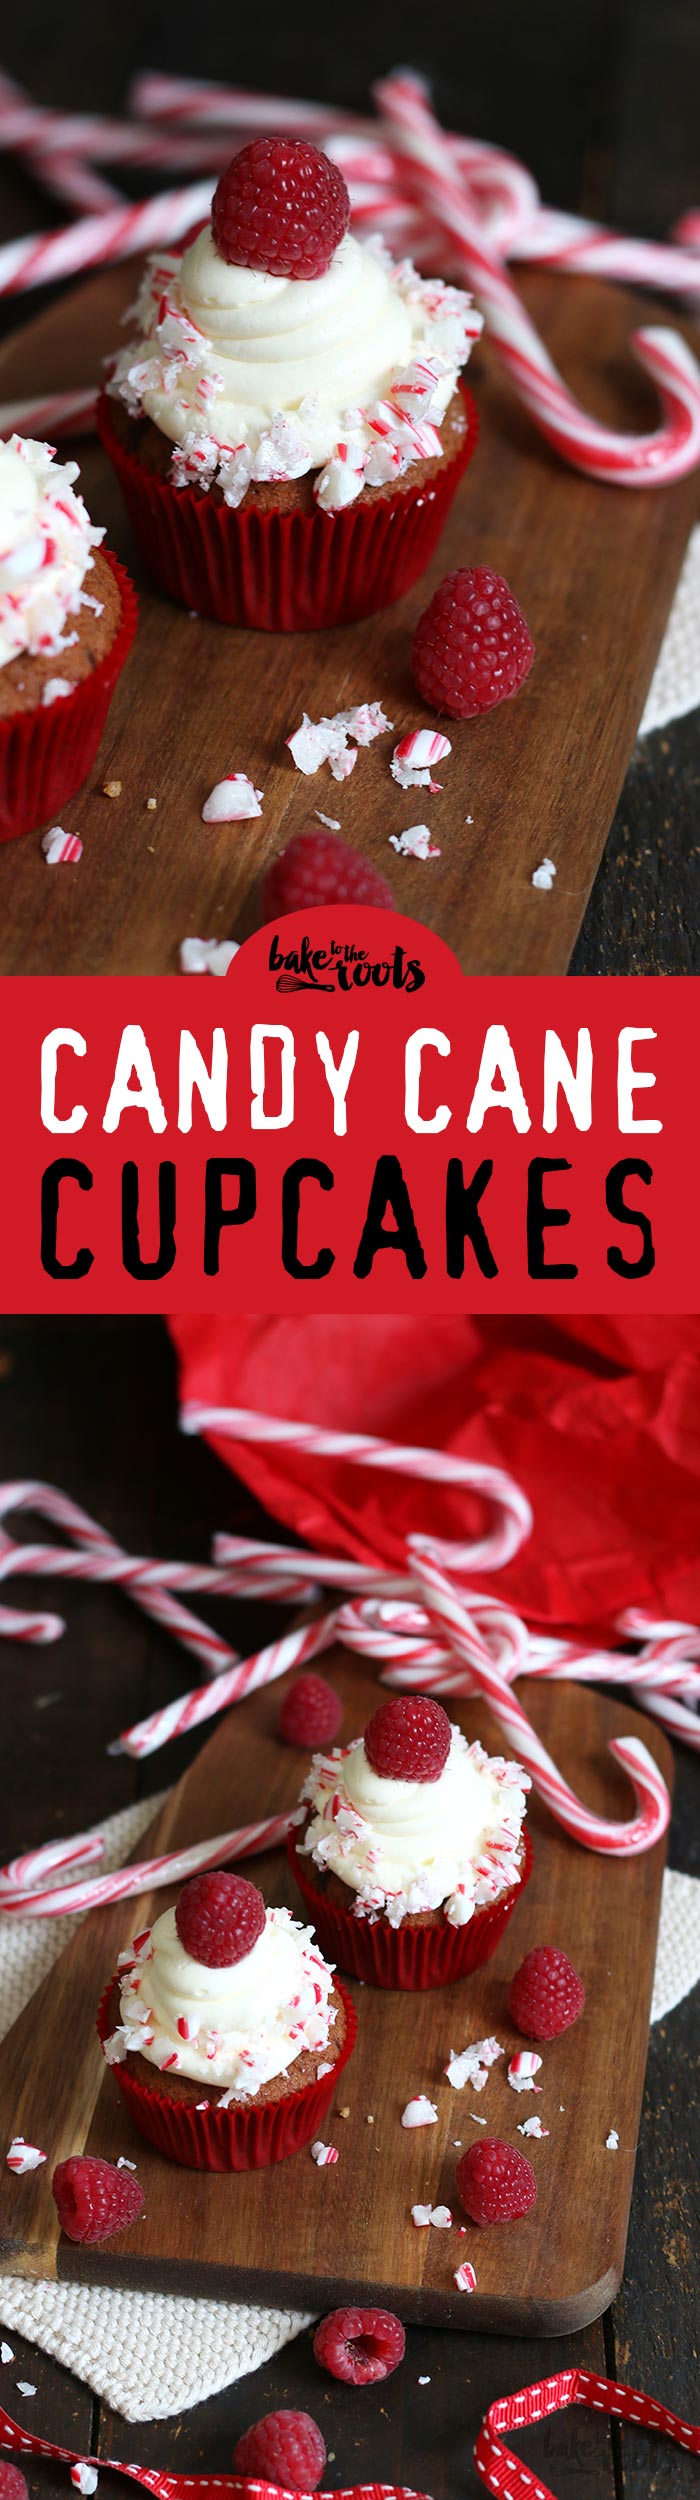 Leckere Schokoladencupcakes mit einer Füllung aus Himbeeren, Vanille Buttercreme oben drauf und Candy Cane Dekoration - perfekt für Weihnachten | Bake to the roots